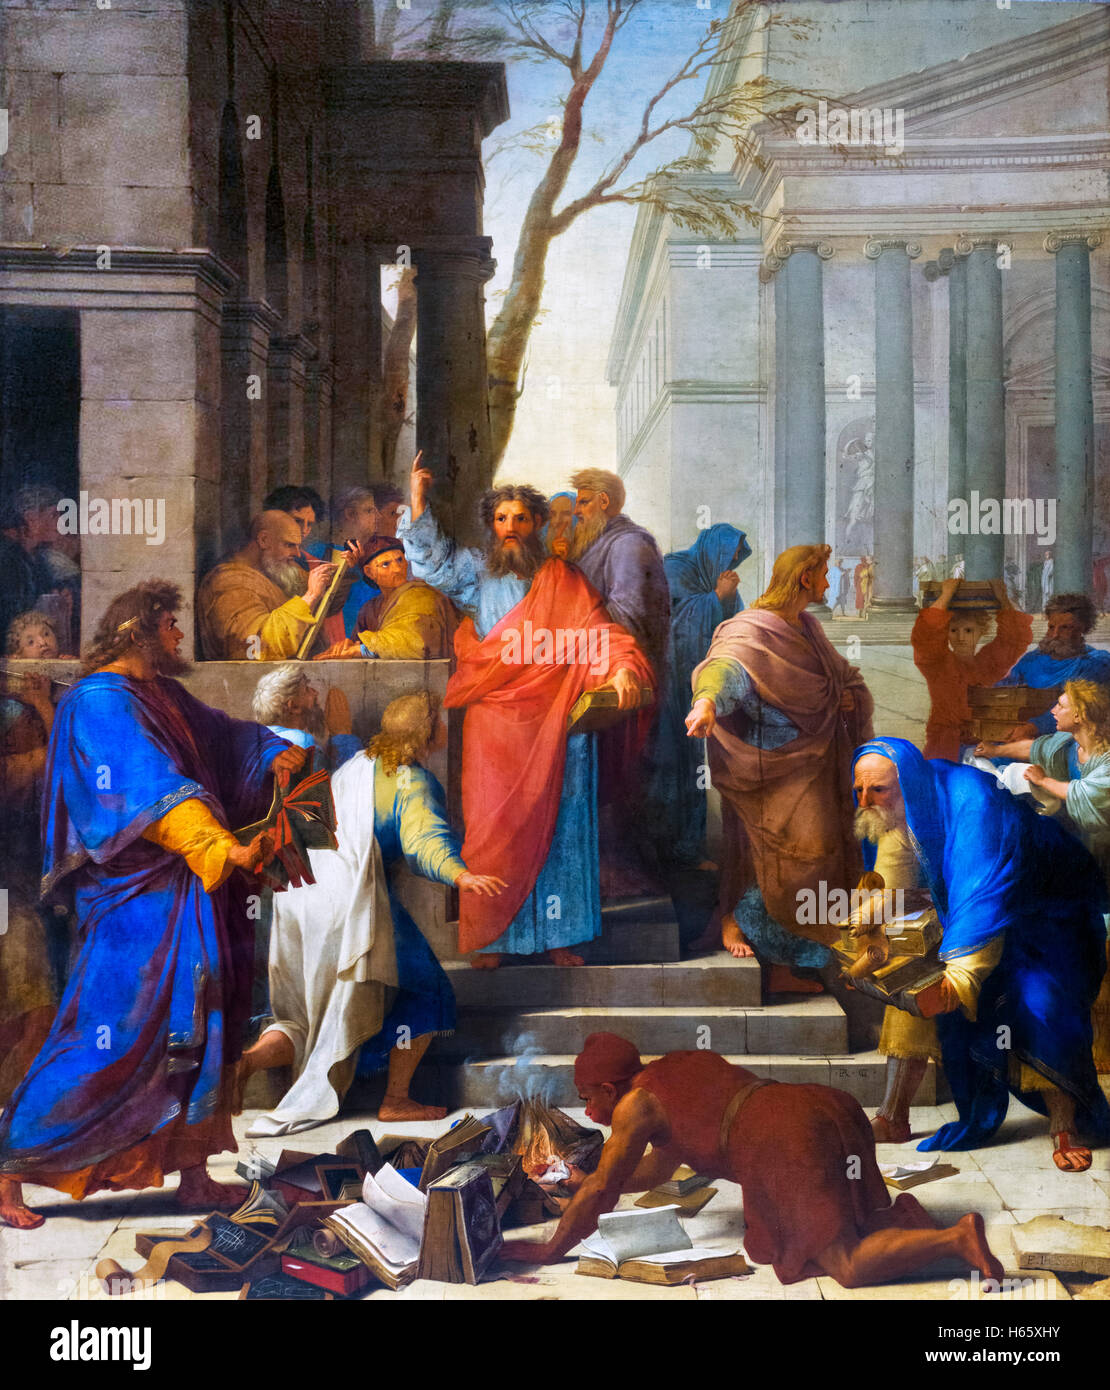 Die Predigt von Paulus in Ephesus (La Prédication de Saint Paul À Éphèse) von Eustache Le Sueur, Öl auf Leinwand, 1649.  Paulus sieht man Predigt während Bücher über Zauberei im Vordergrund verbrannt sind. Stockfoto